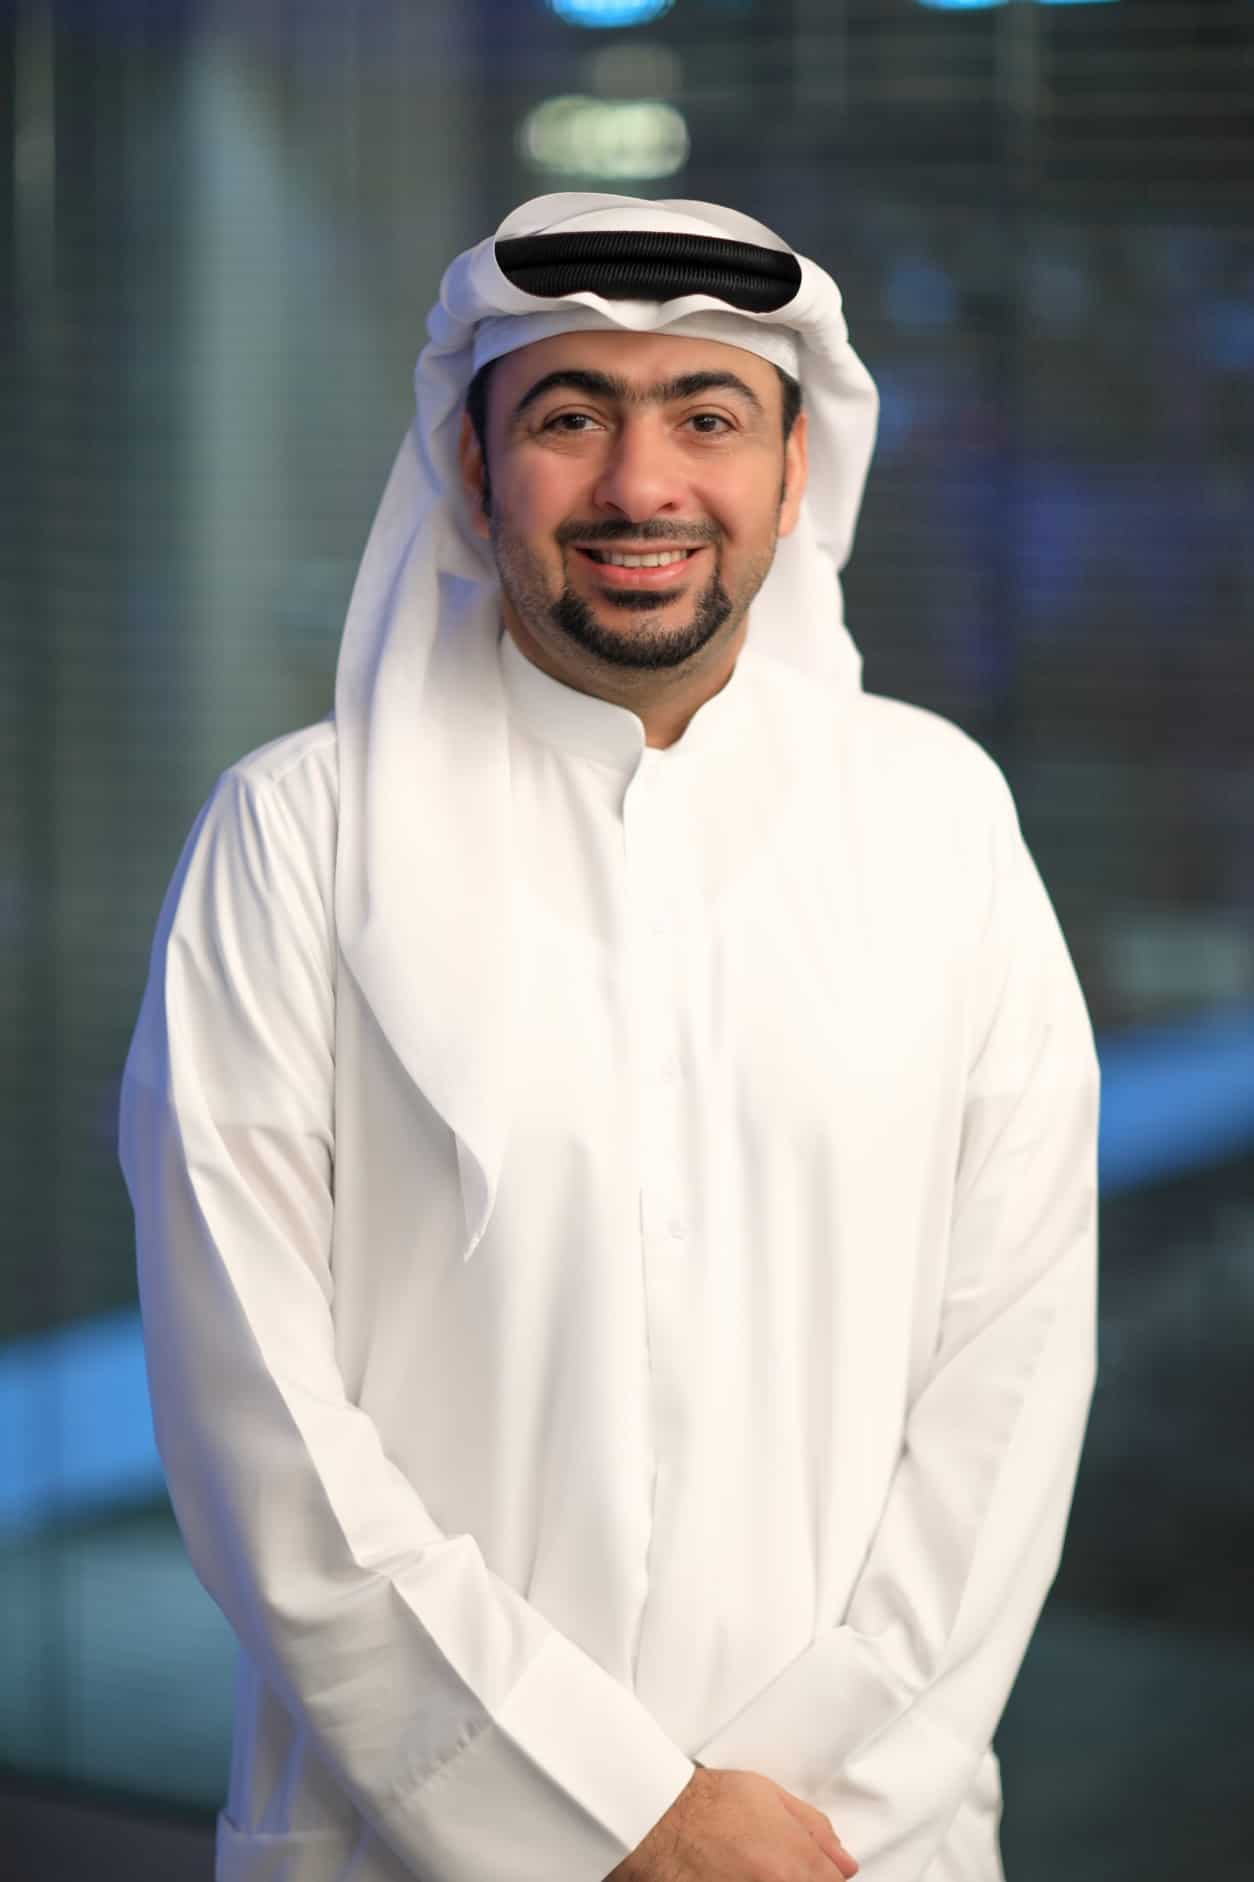 أحمد الخاجة، المدير التنفيذي لمؤسسة دبي للمهرجانات والتجزئة